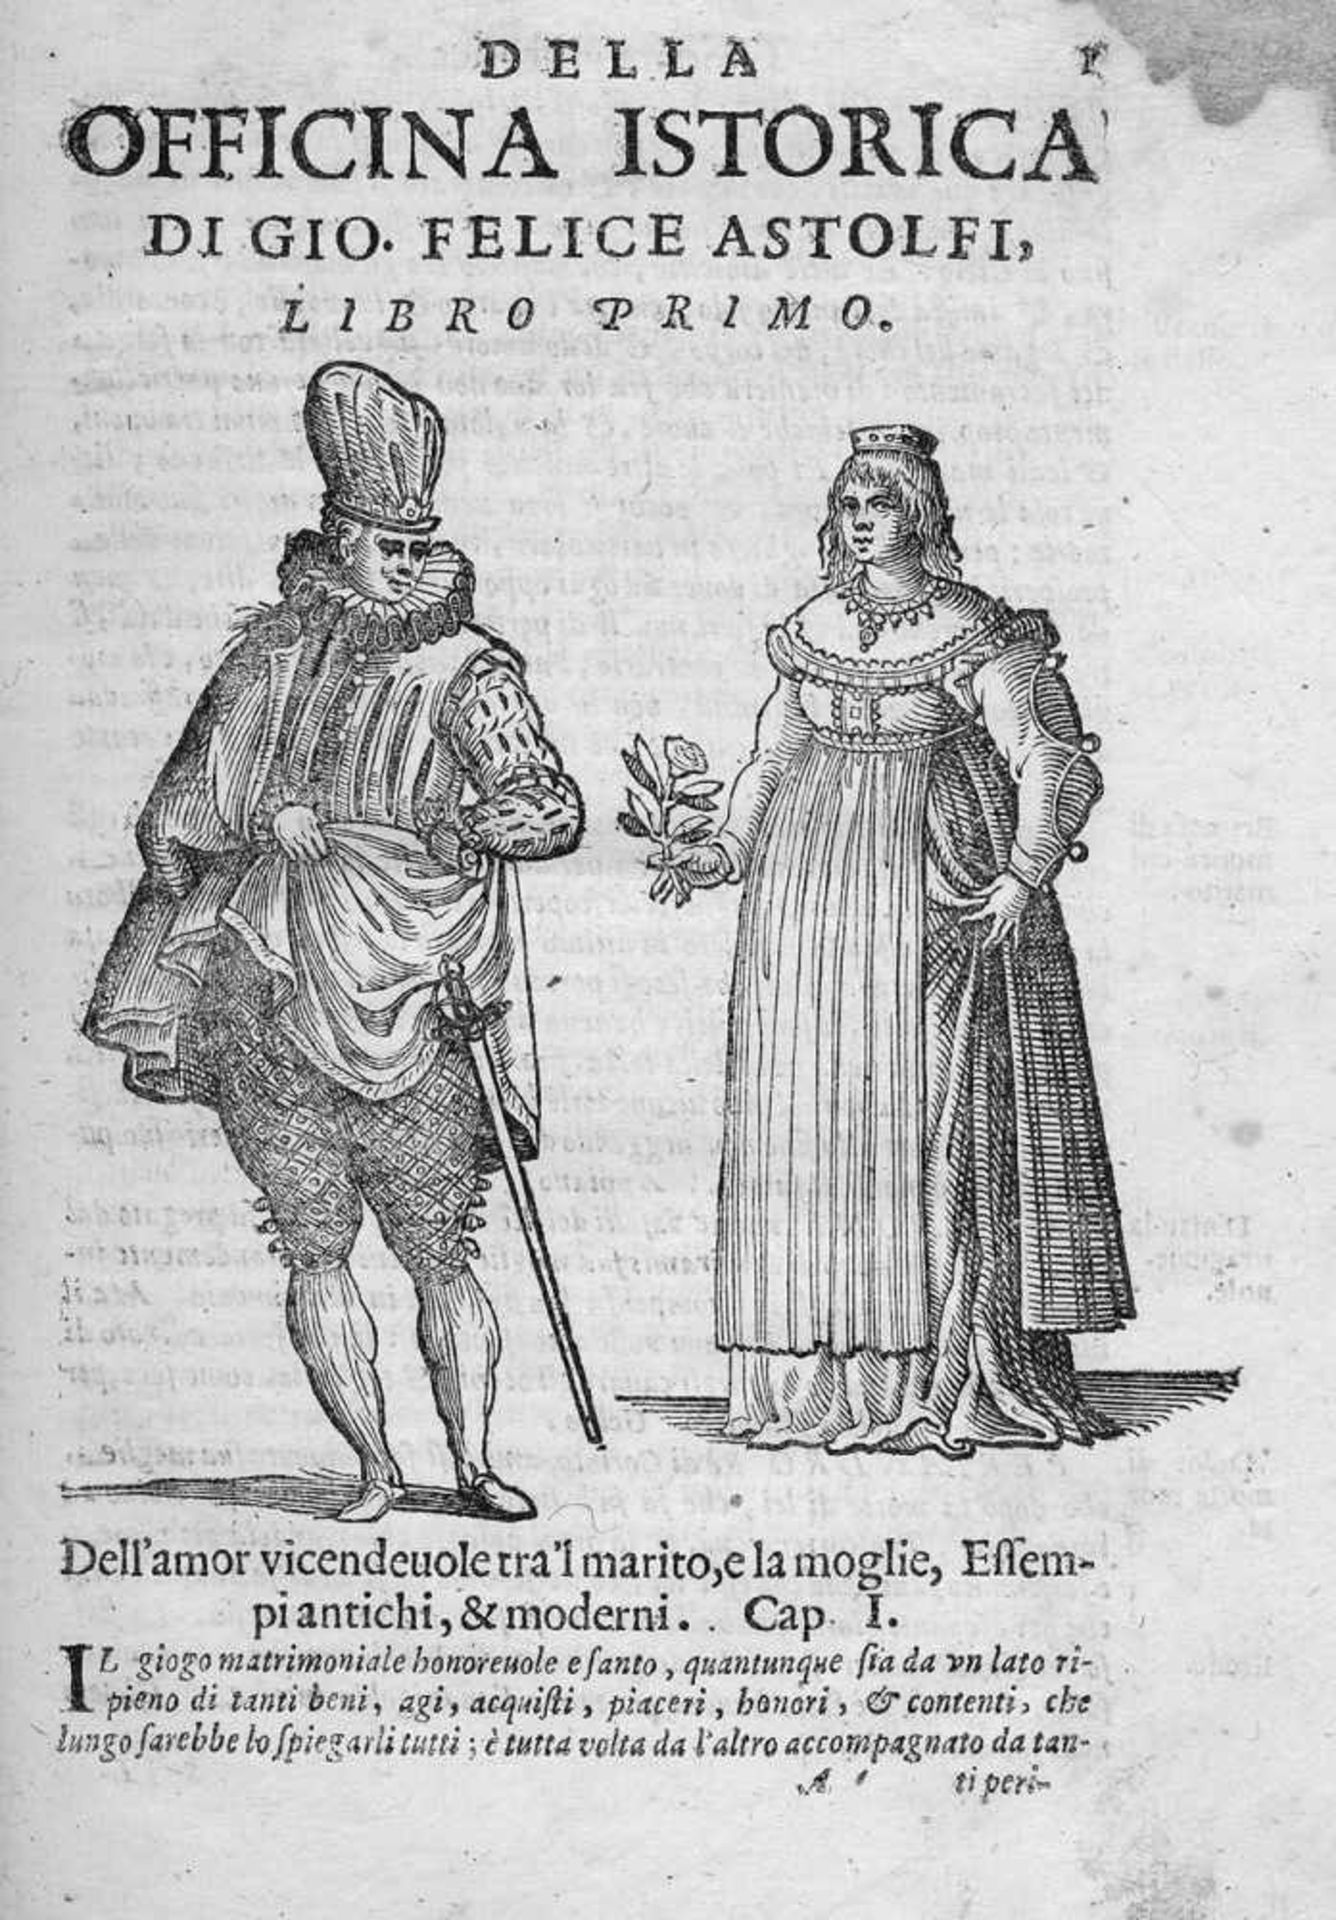 Astolfi, Giovanni Felice: Della officina historica libri IIIIAstolfi, Giovanni Felice. Della